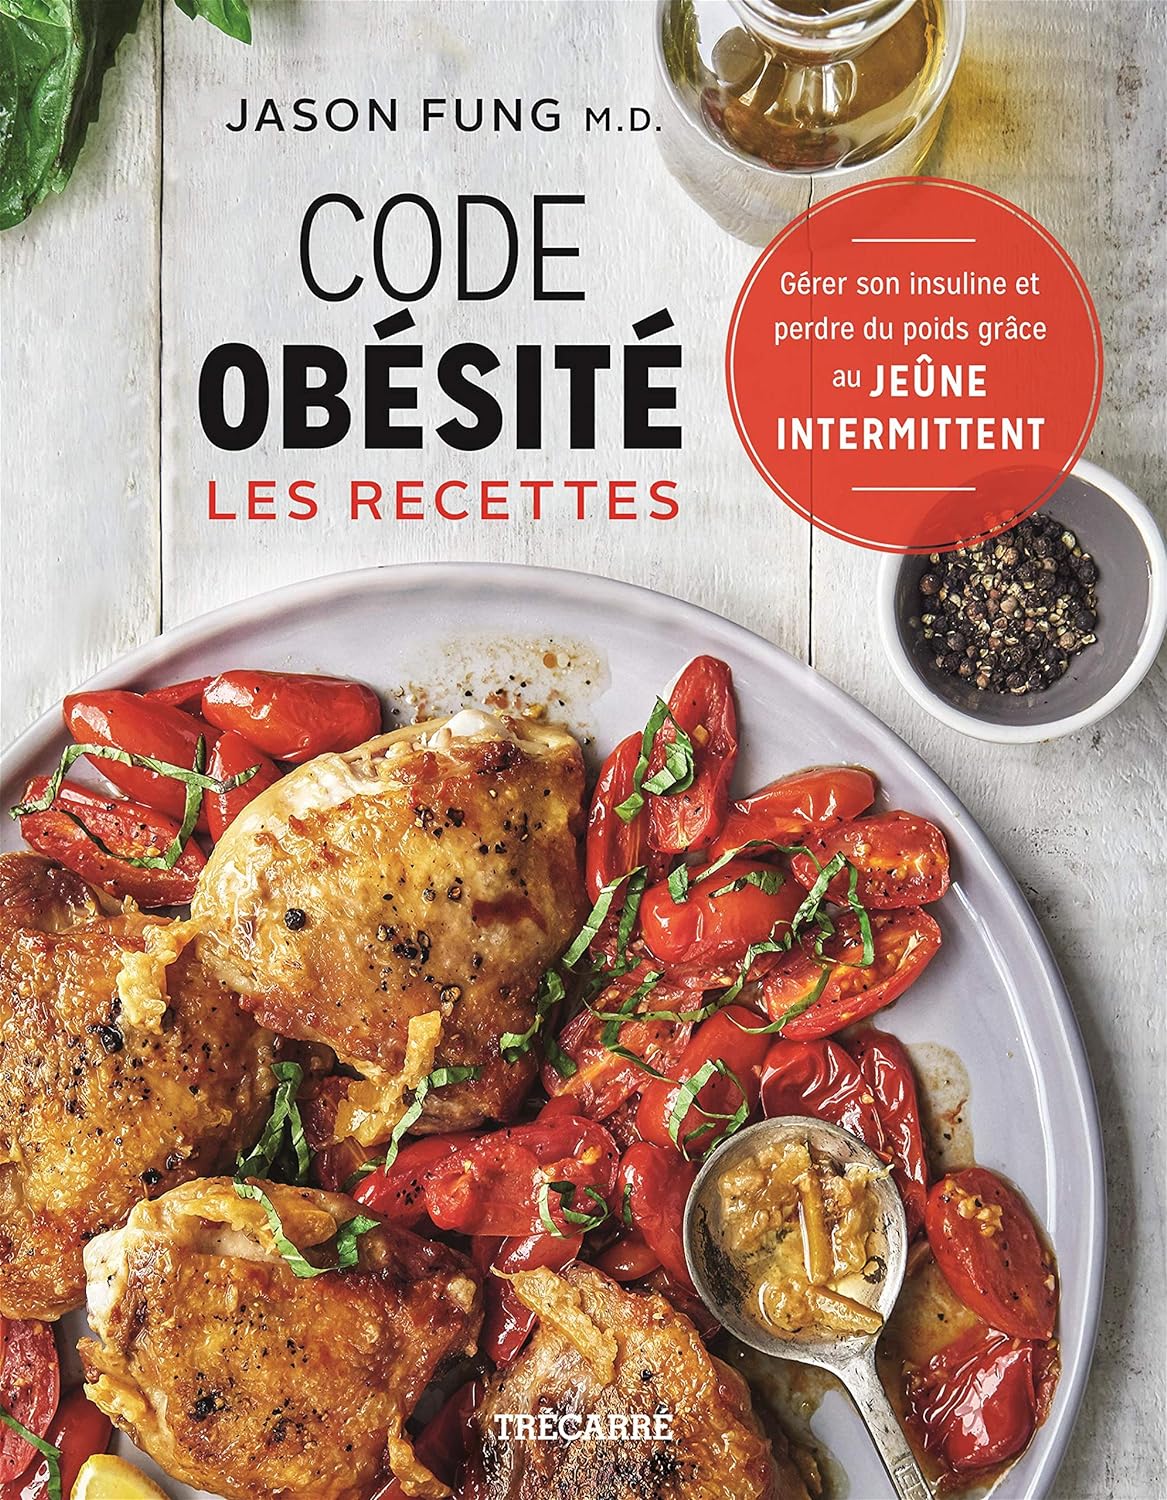 Code obésité : Les recettes - Jason Fung